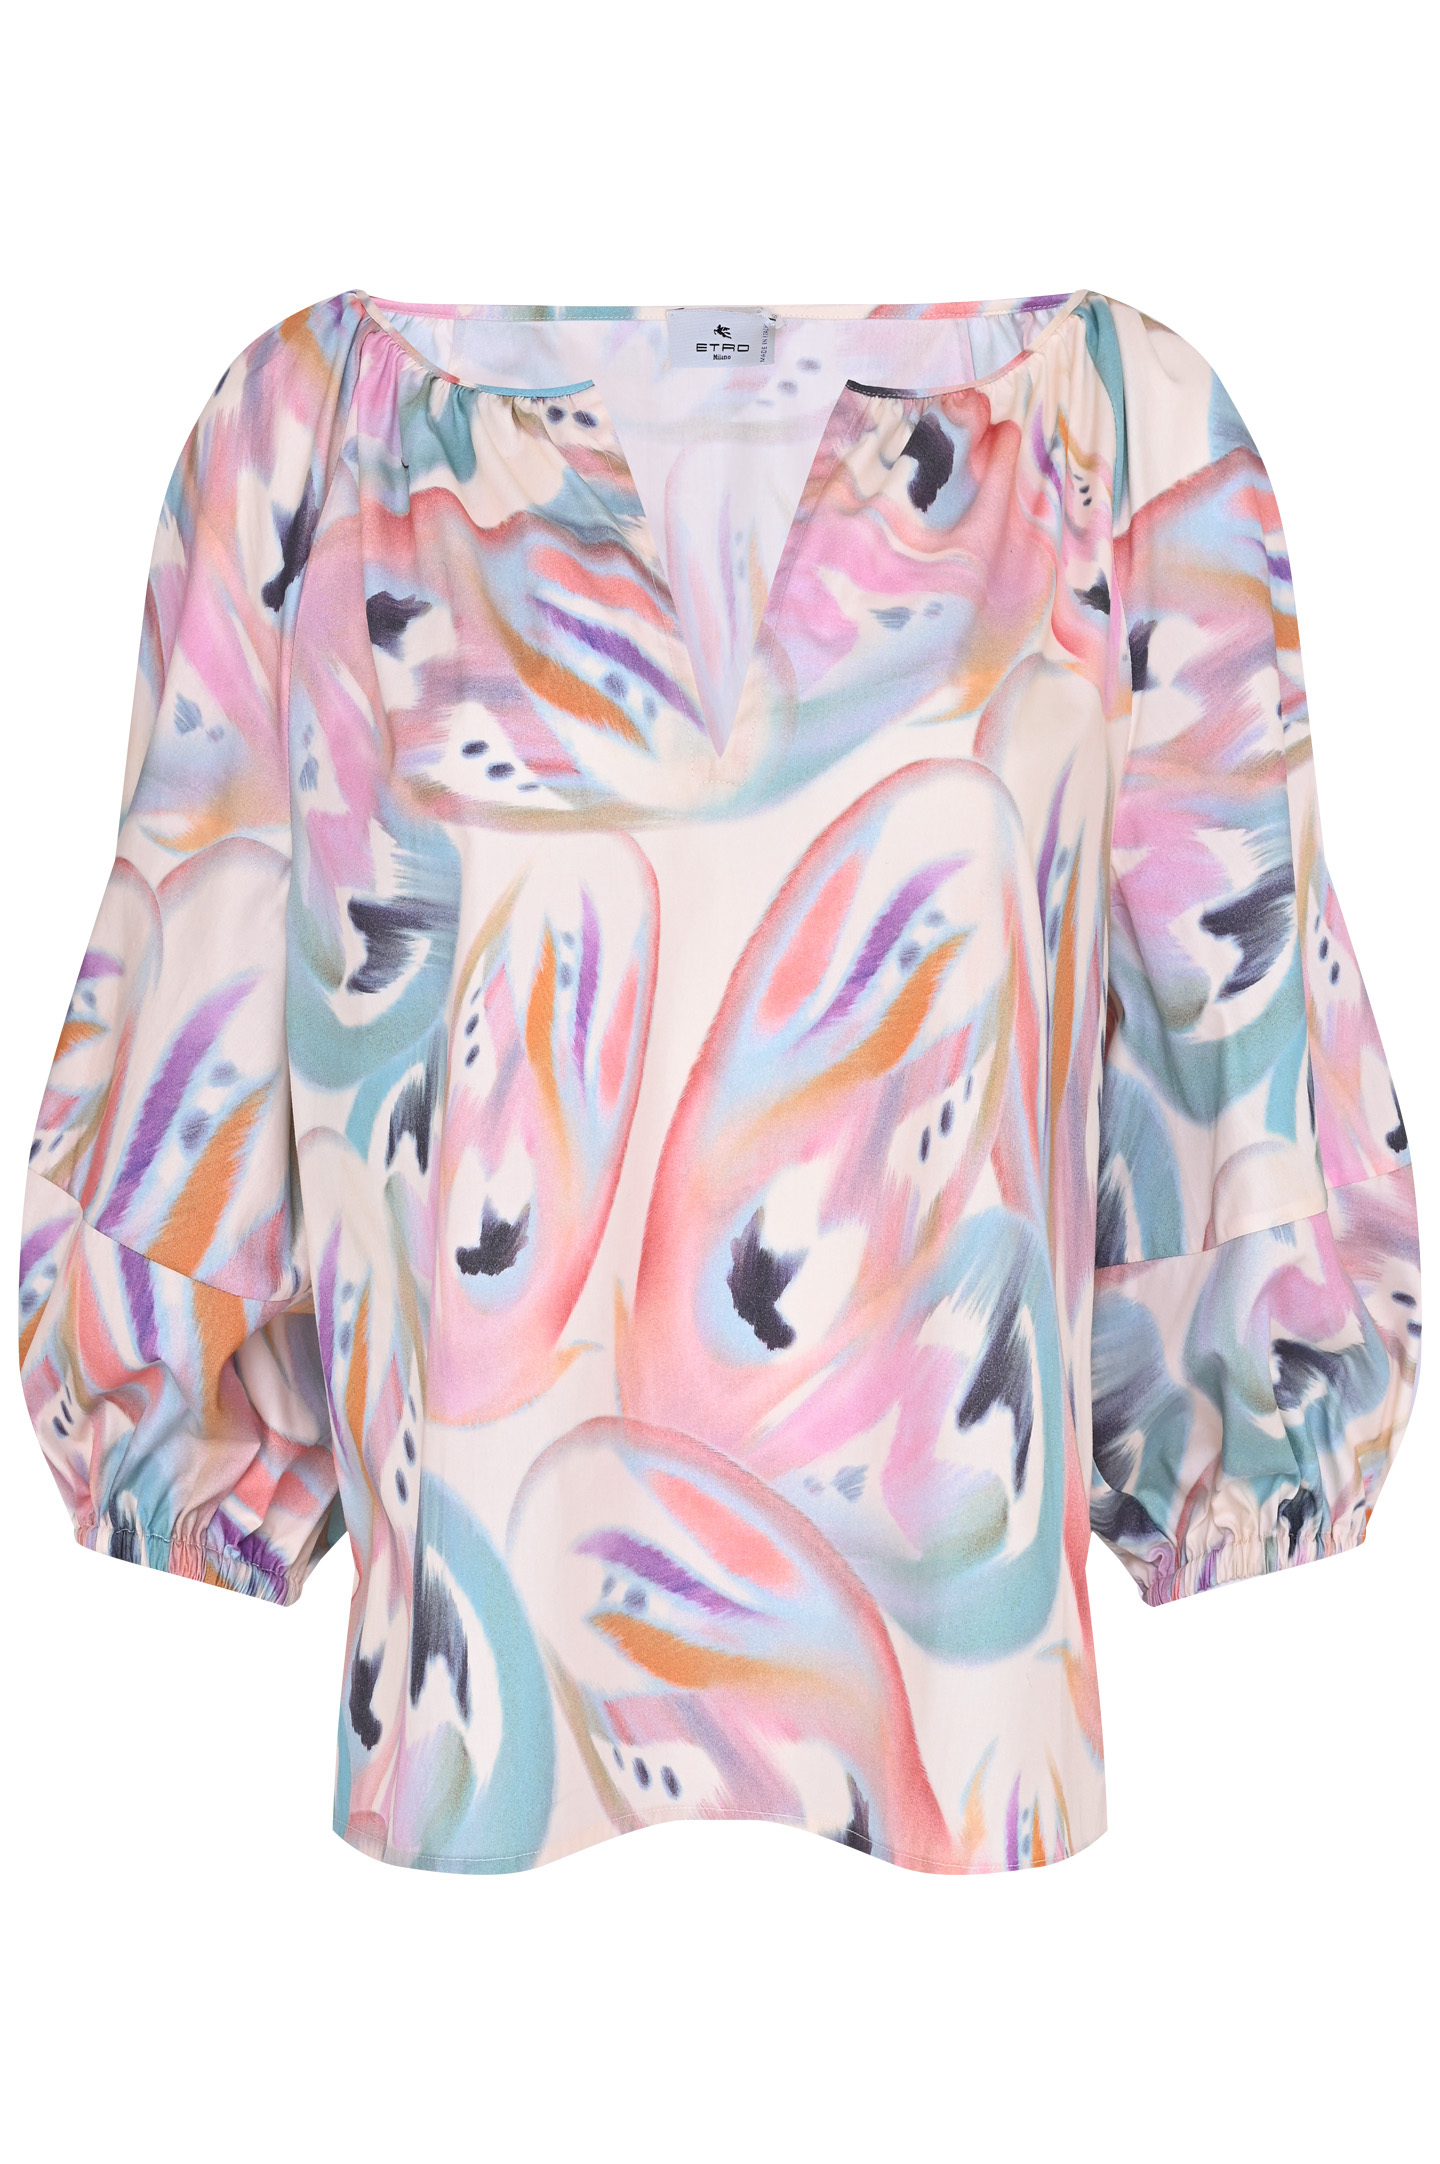 Блуза ETRO 12467 4502, цвет: Разноцветный, Женский